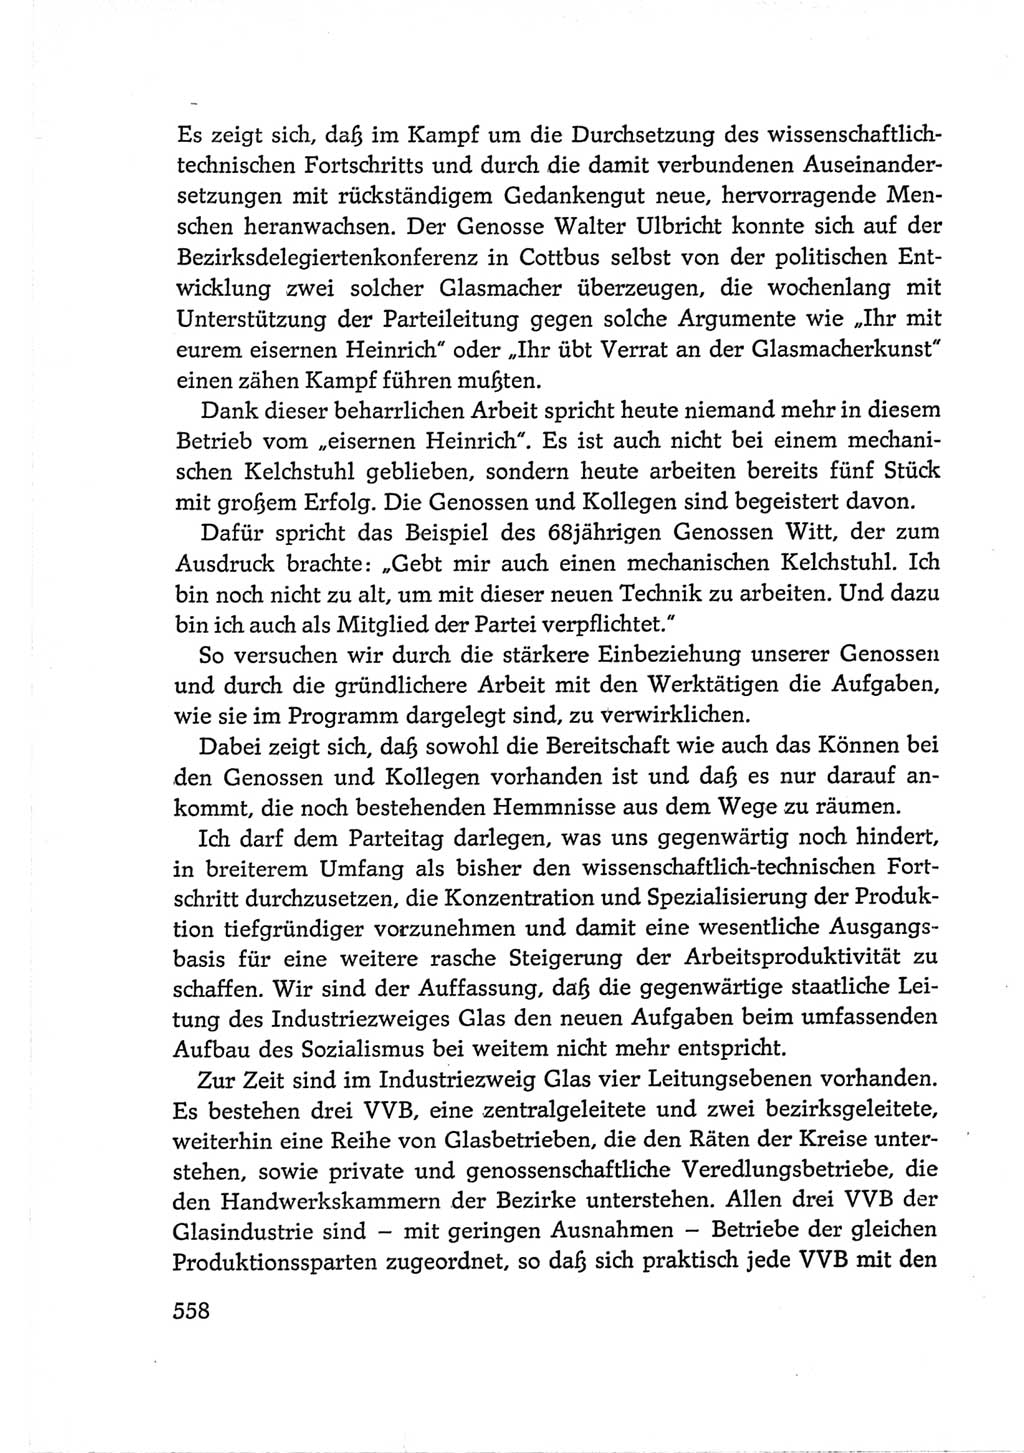 Protokoll der Verhandlungen des Ⅵ. Parteitages der Sozialistischen Einheitspartei Deutschlands (SED) [Deutsche Demokratische Republik (DDR)] 1963, Band Ⅲ, Seite 558 (Prot. Verh. Ⅵ. PT SED DDR 1963, Bd. Ⅲ, S. 558)